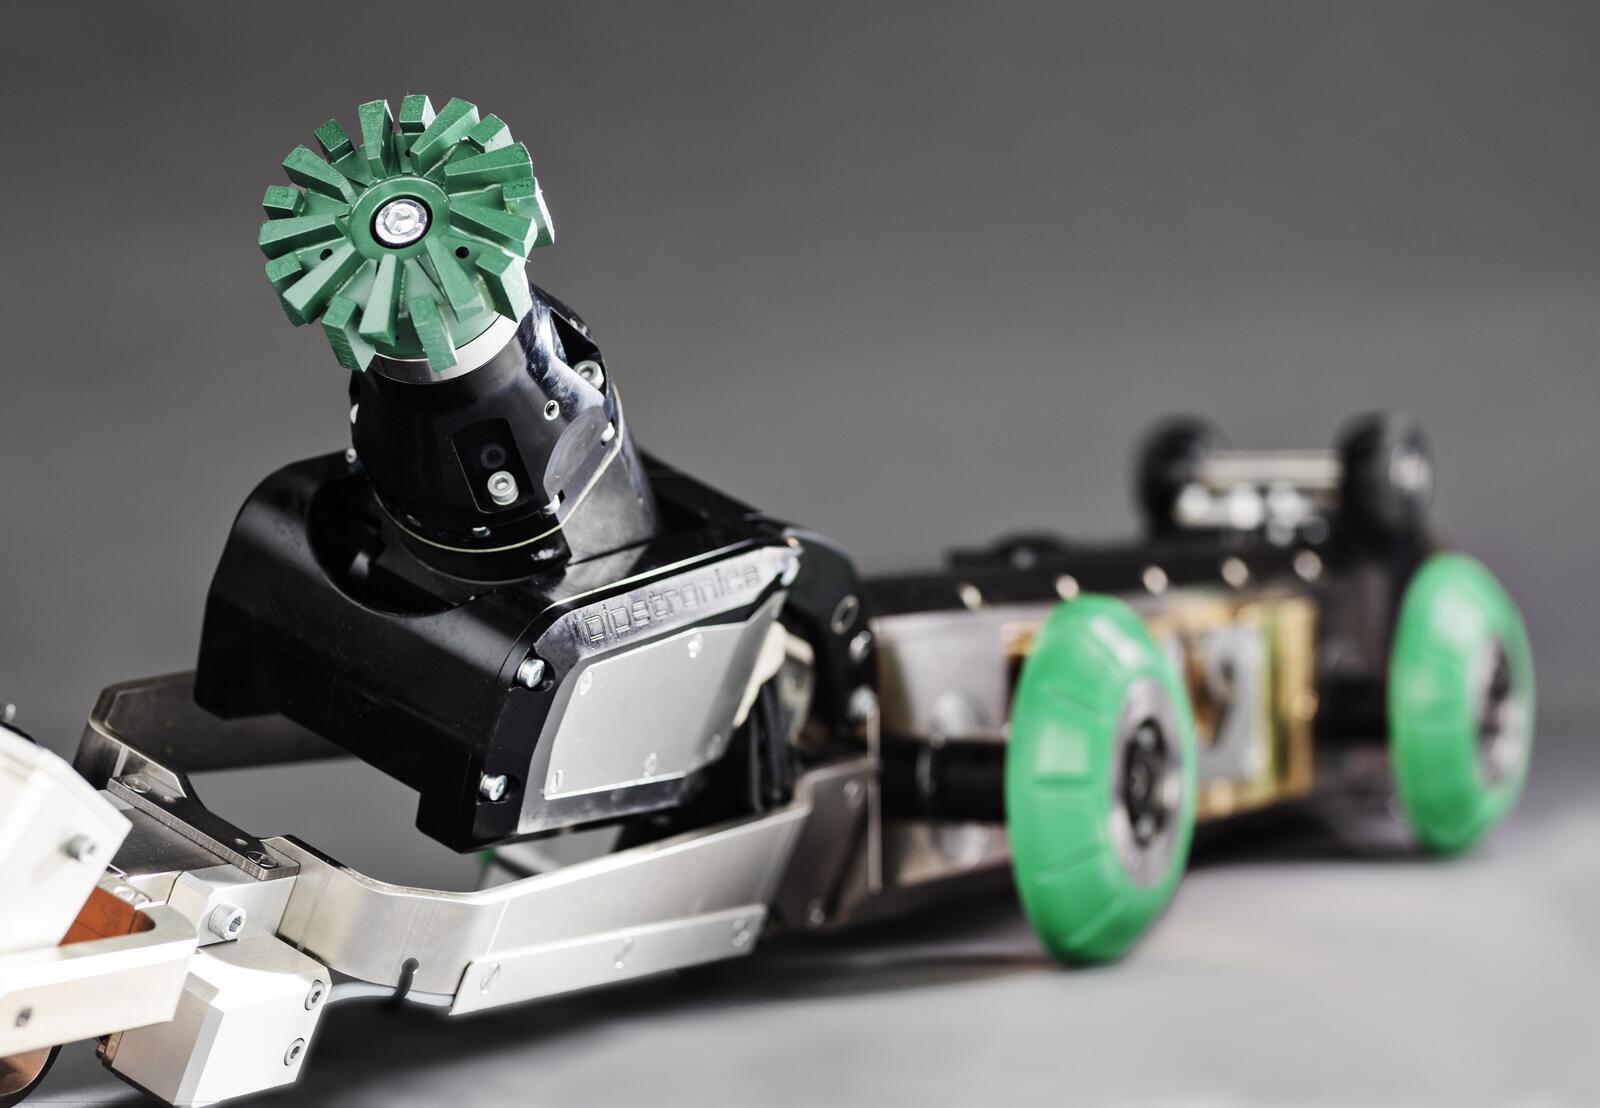 eCutter – In der grabenlosen Kanalsanierung erleichtern intelligente Robotersysteme die Arbeit im Rohr. Emissionsfrei und leise können sowohl Schäden erfasst, als auch Instandhaltungsarbeiten ausgeführt werden.